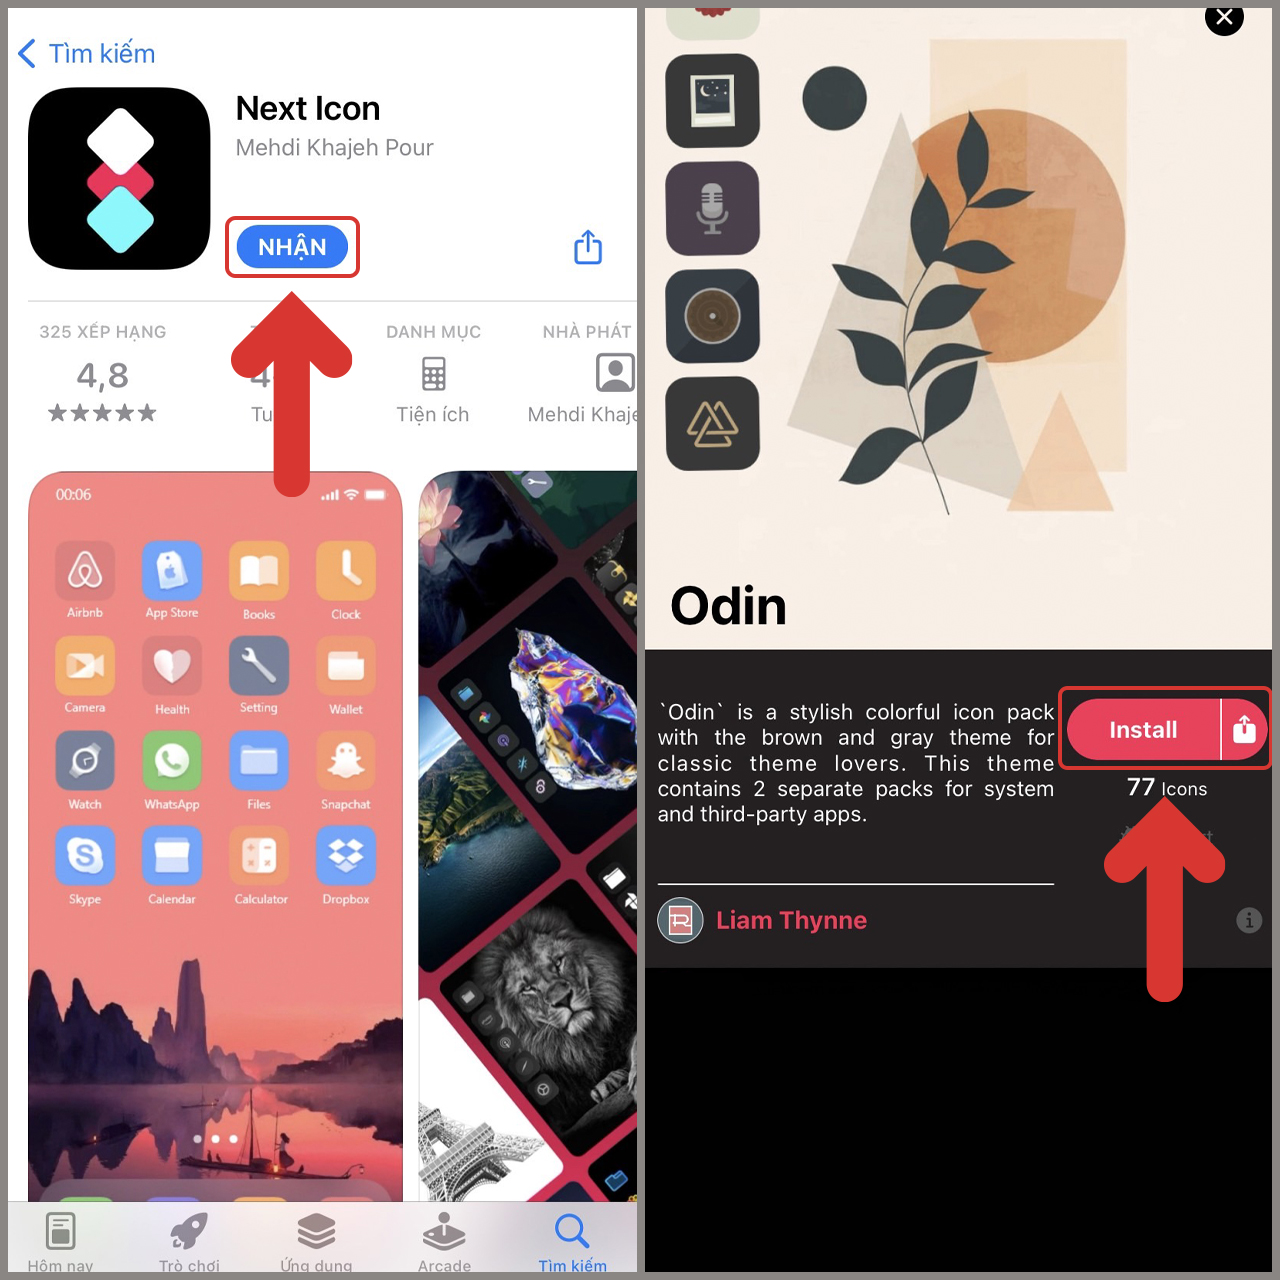 Đổi icon trên giao diện màn hình iPhone sẽ giúp người dùng tạo ra một giao diện độc đáo và riêng của mình. Bạn có thể thay đổi các biểu tượng như biểu tượng điện thoại, tin nhắn hay cài đặt theo sở thích của mình. Điều này sẽ giúp bạn tạo được một giao diện đẹp mắt, cá tính và thu hút sự chú ý của mọi người.